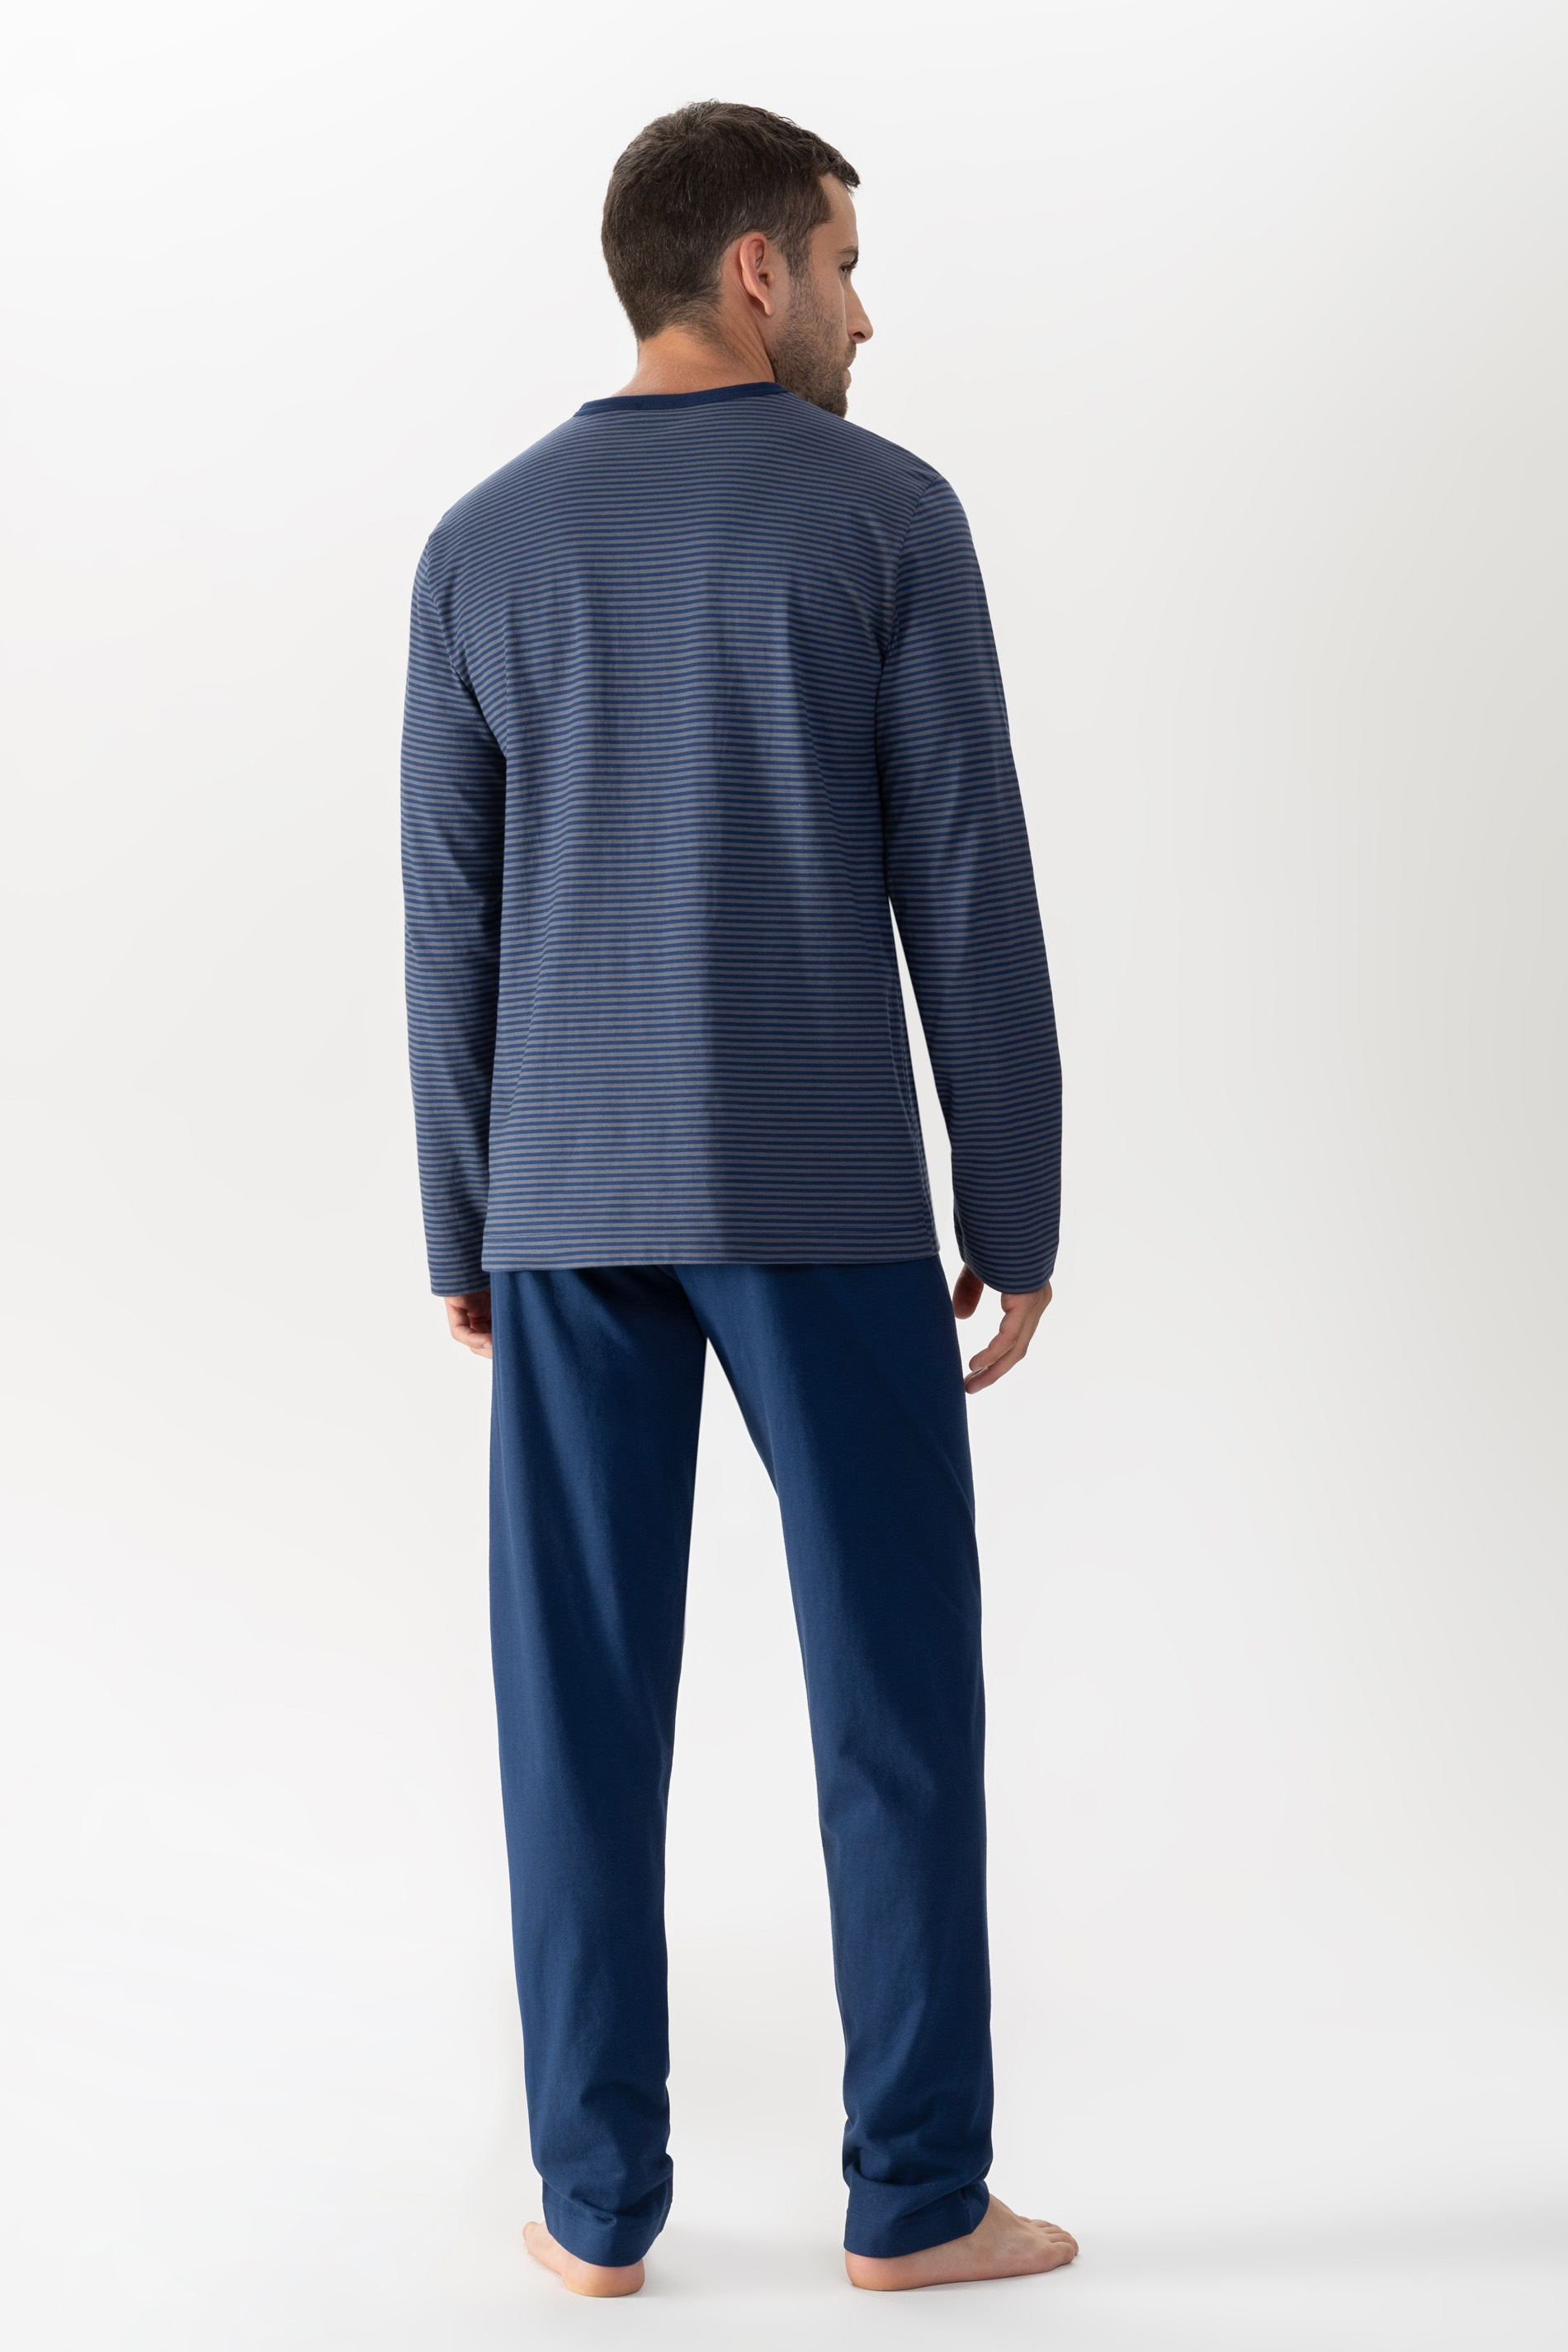 Pyjamas Neptune Serie Cardwell Rear View | mey®